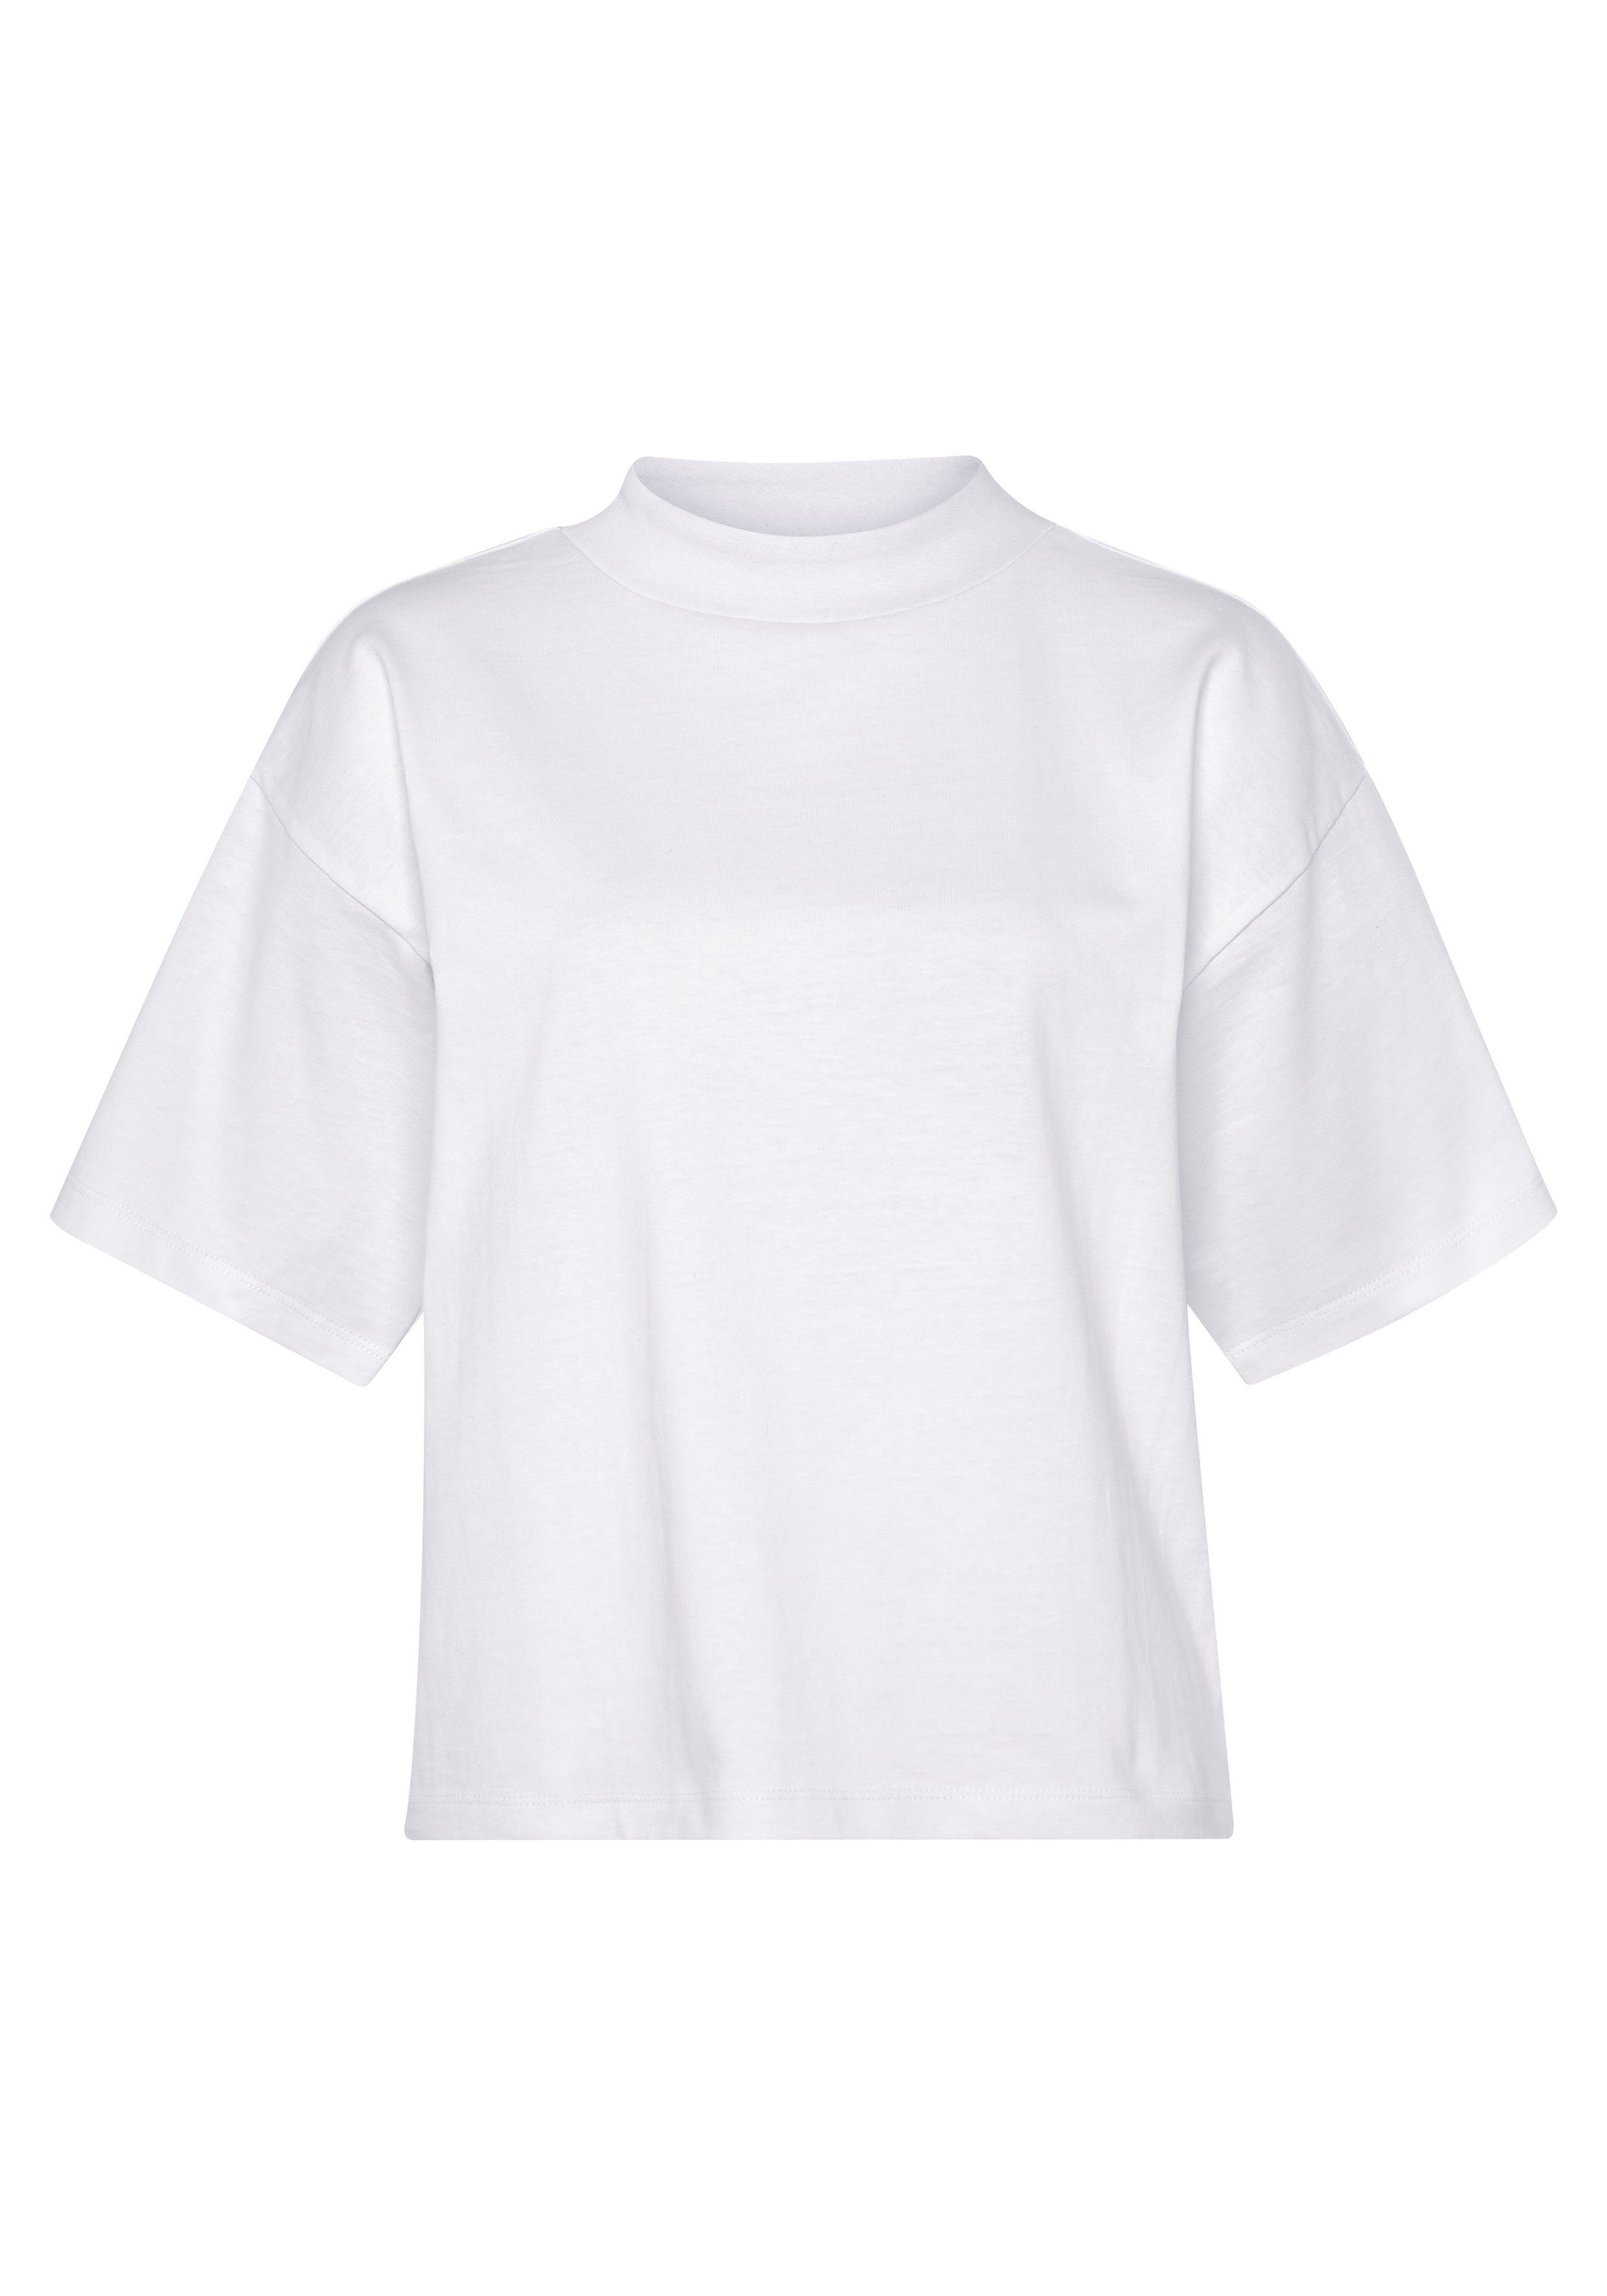 AJC breitem modisch Oversize-Shirt weiß mit Rippen-Rundhalsausschnitt